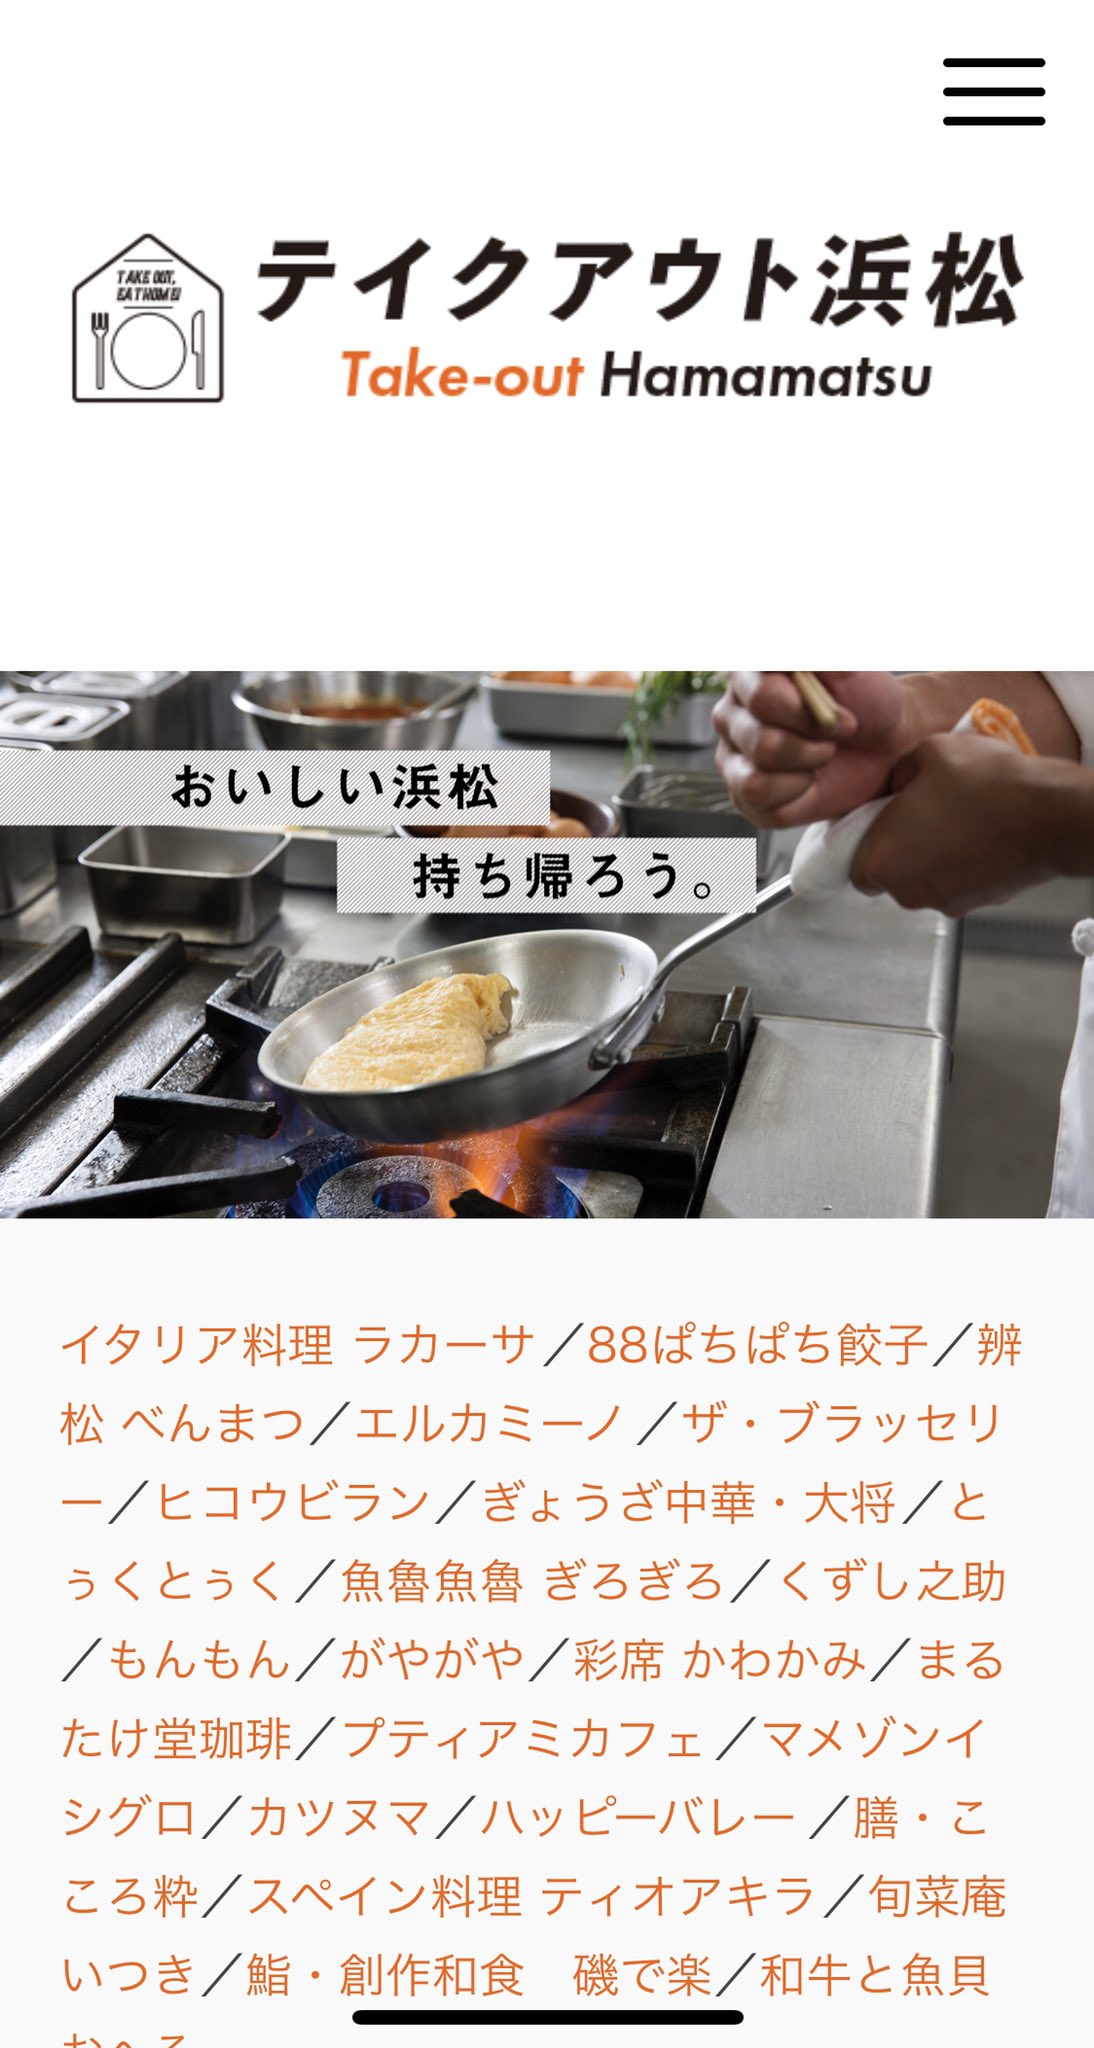 佐藤こと Yes 都構想 東京都北区 高校の先輩であり 地元浜松でブランディングを手掛けている外山さんが テイクアウト浜松 というプロジェクトを 自社持ち出しで 立ち上げました T Co Hwck7aspjn 浜松の飲食店のみなさま テイクアウト